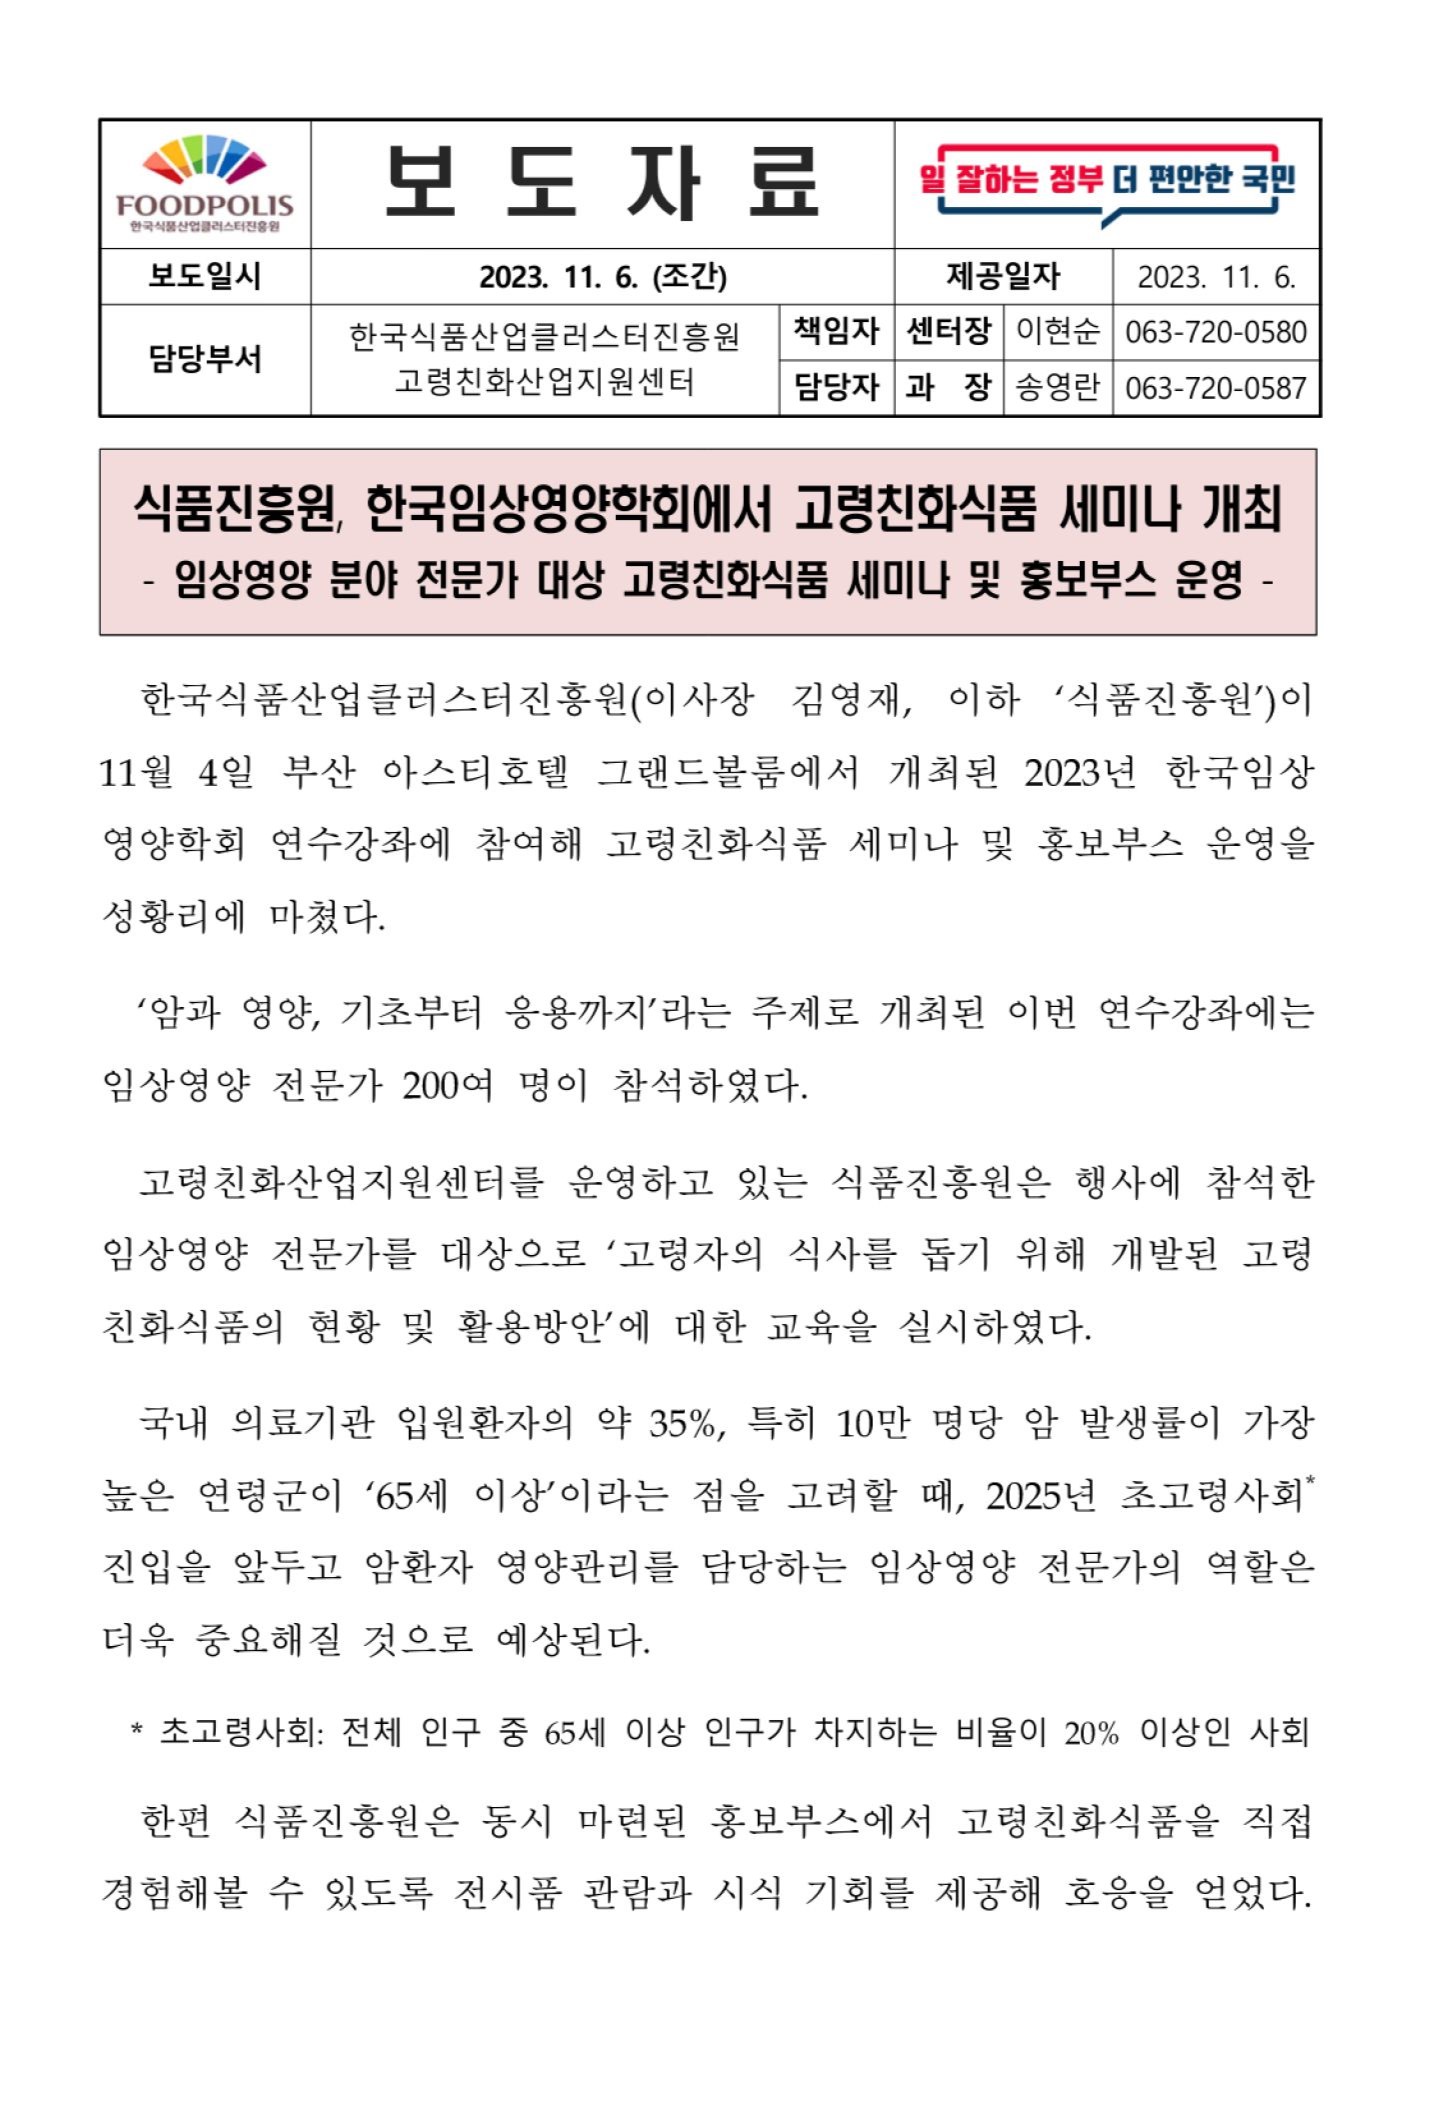 식품진흥원, 한국임상영양학회에서 고령친화식품 세미나 개최 - 자세한 내용은 첨부파일에서 확인